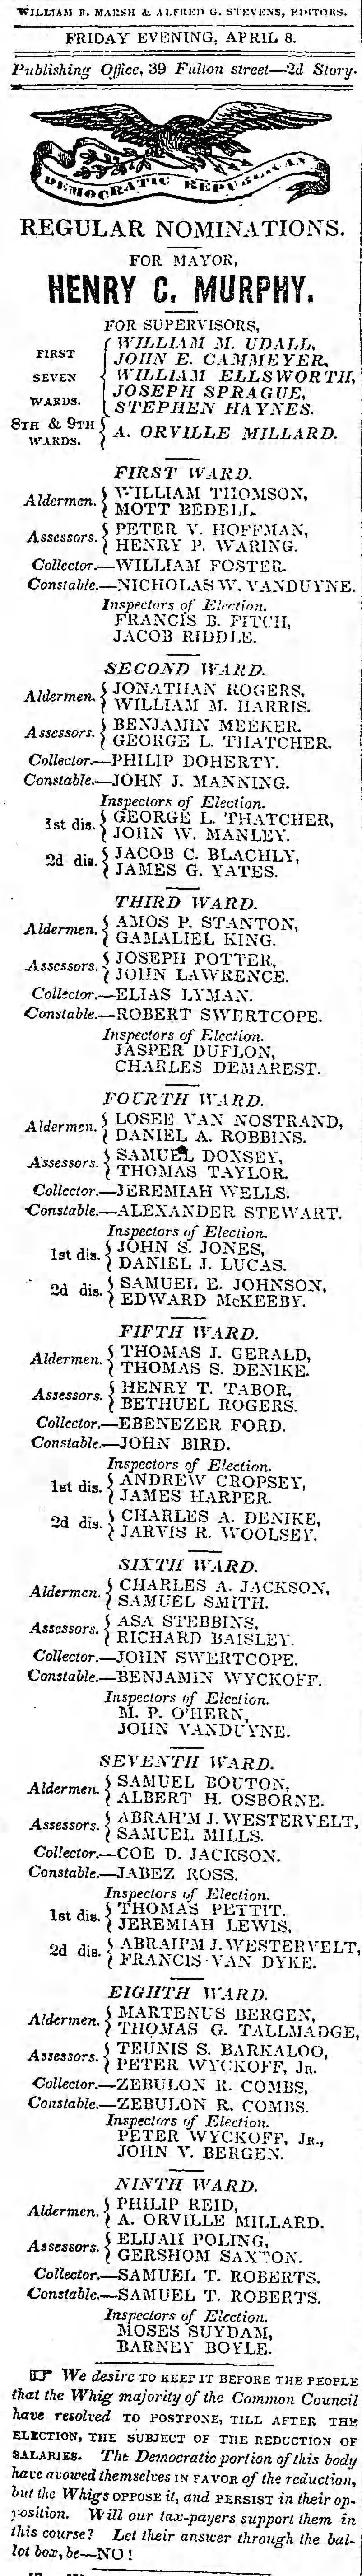 Nominations, 9th Ward Assessor, Elijah Poling, 8 April 1842, p. 2.